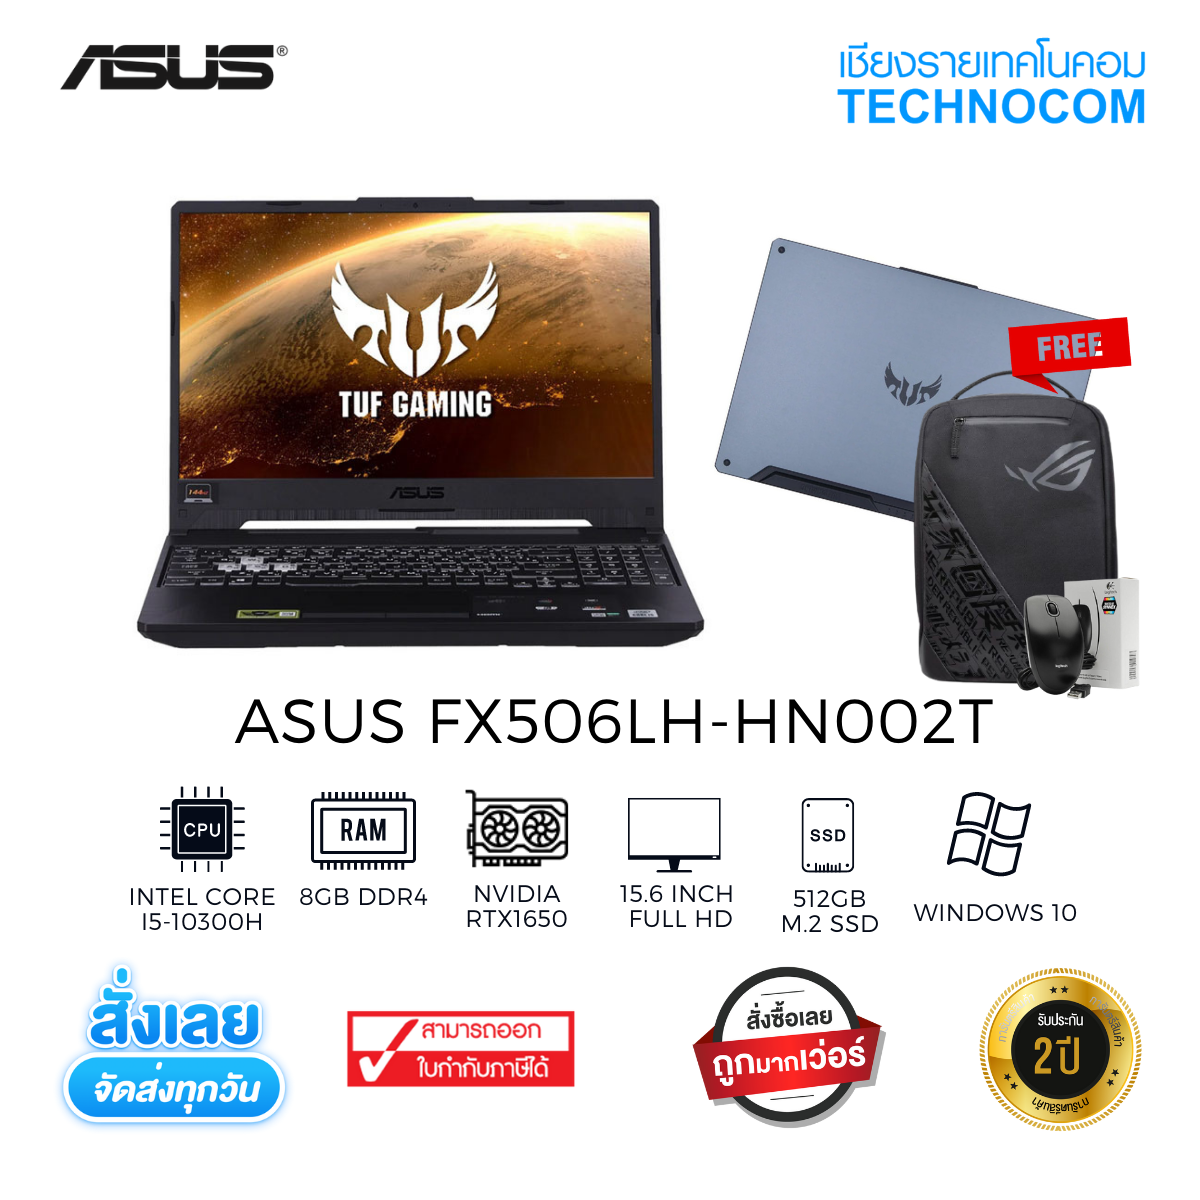 ASUS FX506LH-HN002T/Ci5-10300H/8GB DDR4/512GB M.2 SSD/15.6" FHD/GTX1650 4GB GDDR6/WIN